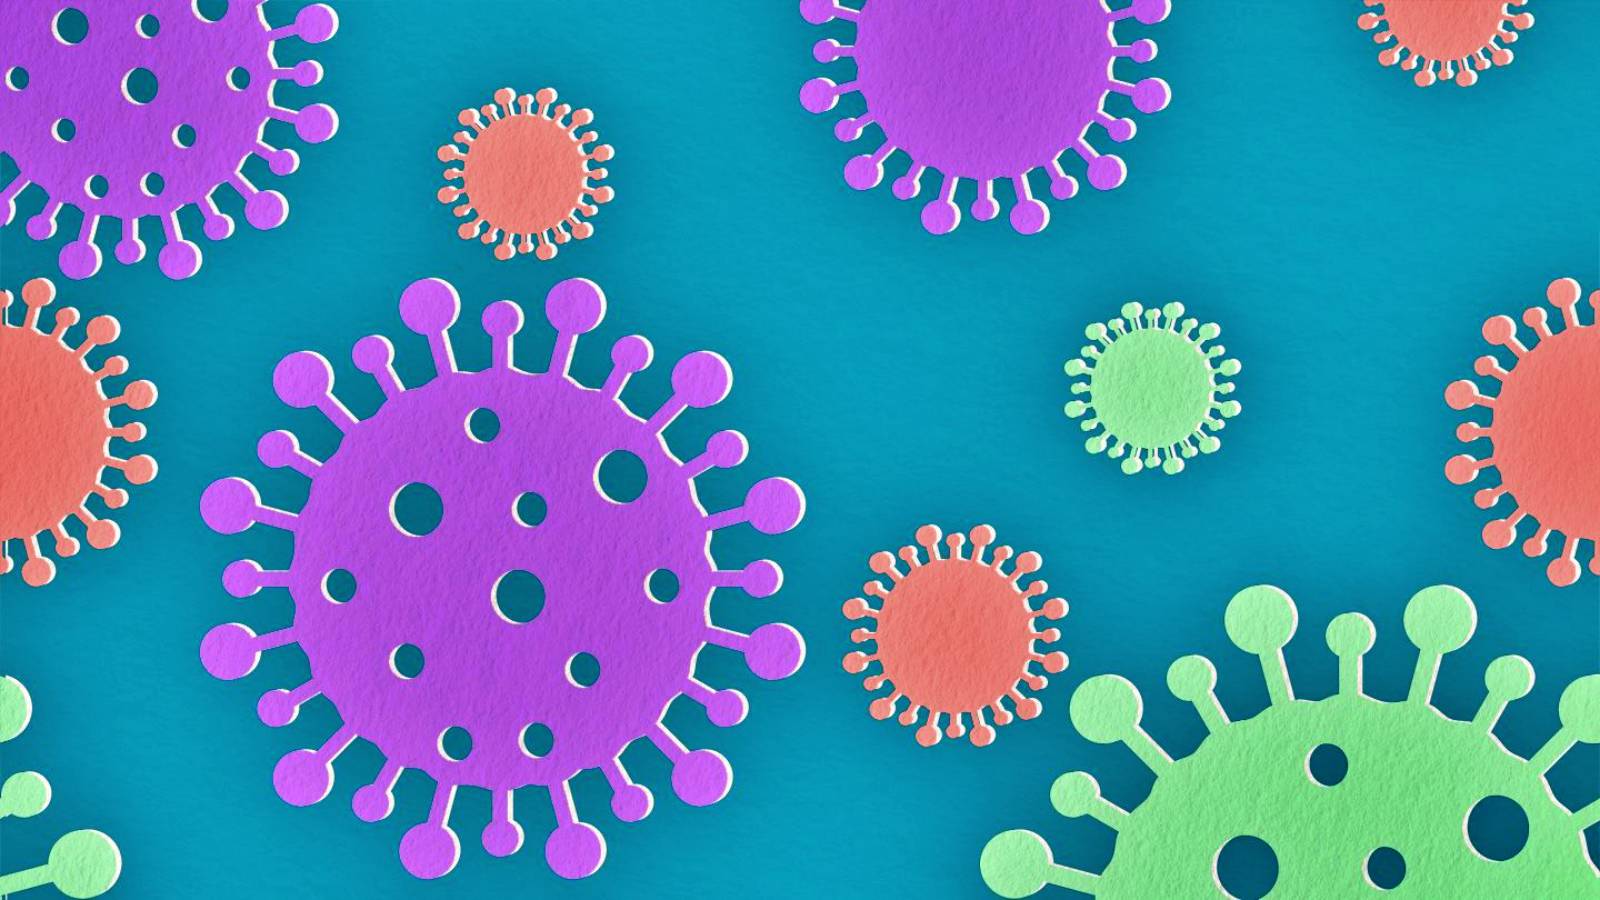 Coronavirus Rumania: enorme número de infecciones anunciadas oficialmente el 23 de octubre de 2021